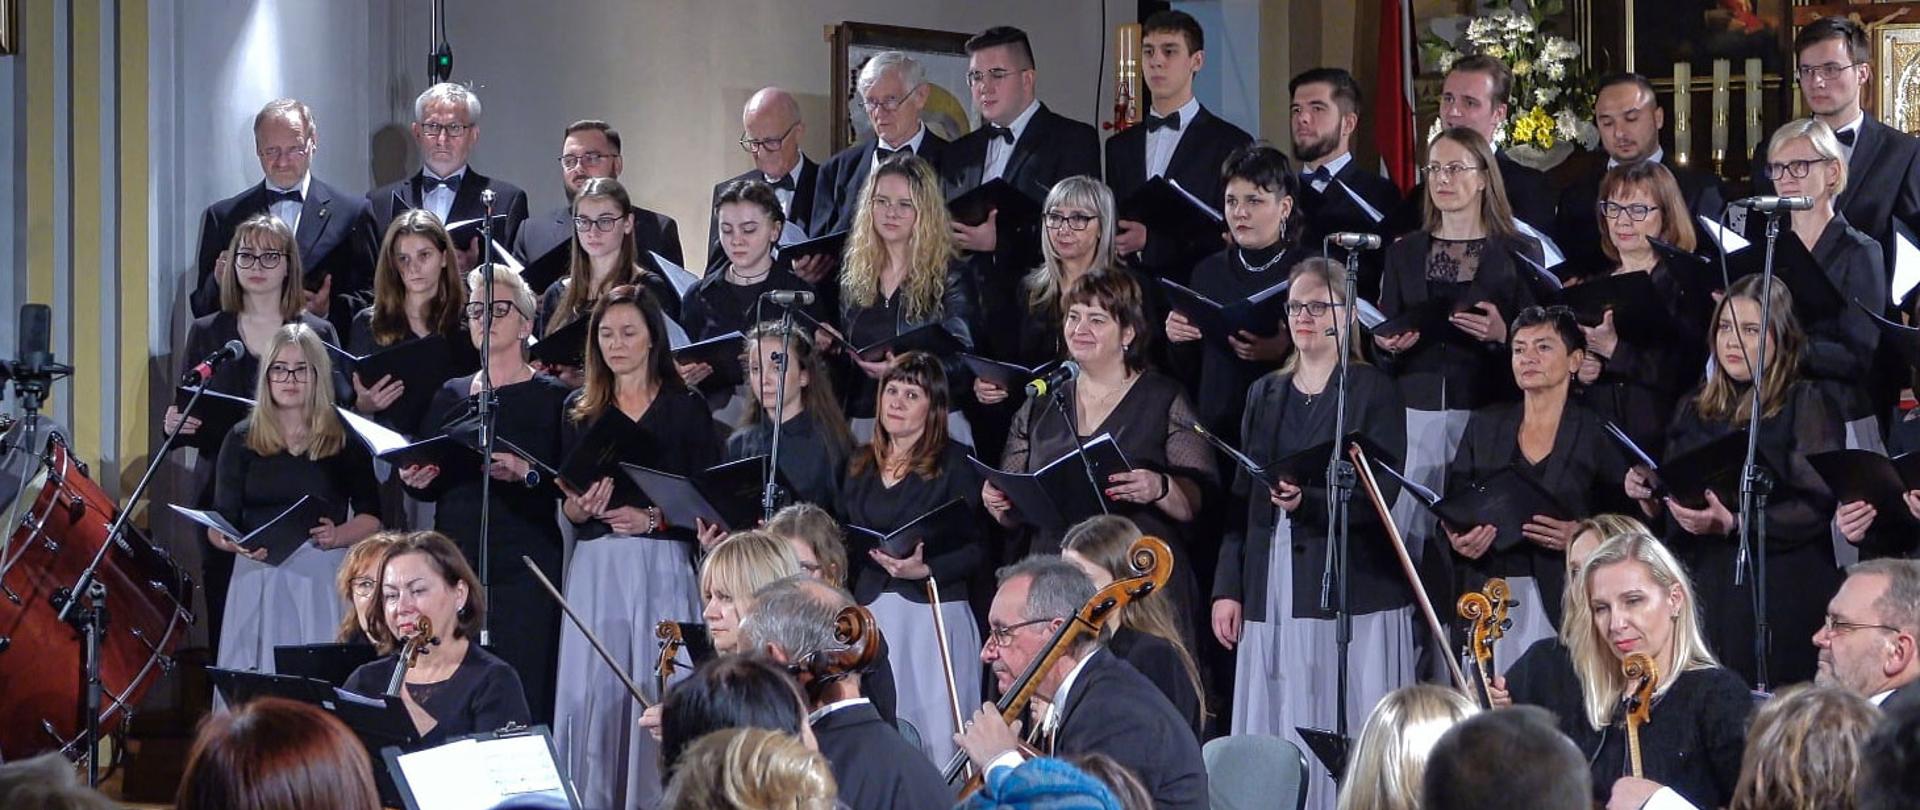 Zdjęcie przedstawia orkiestrę symfoniczną i chór podczas koncertu w Kościele.